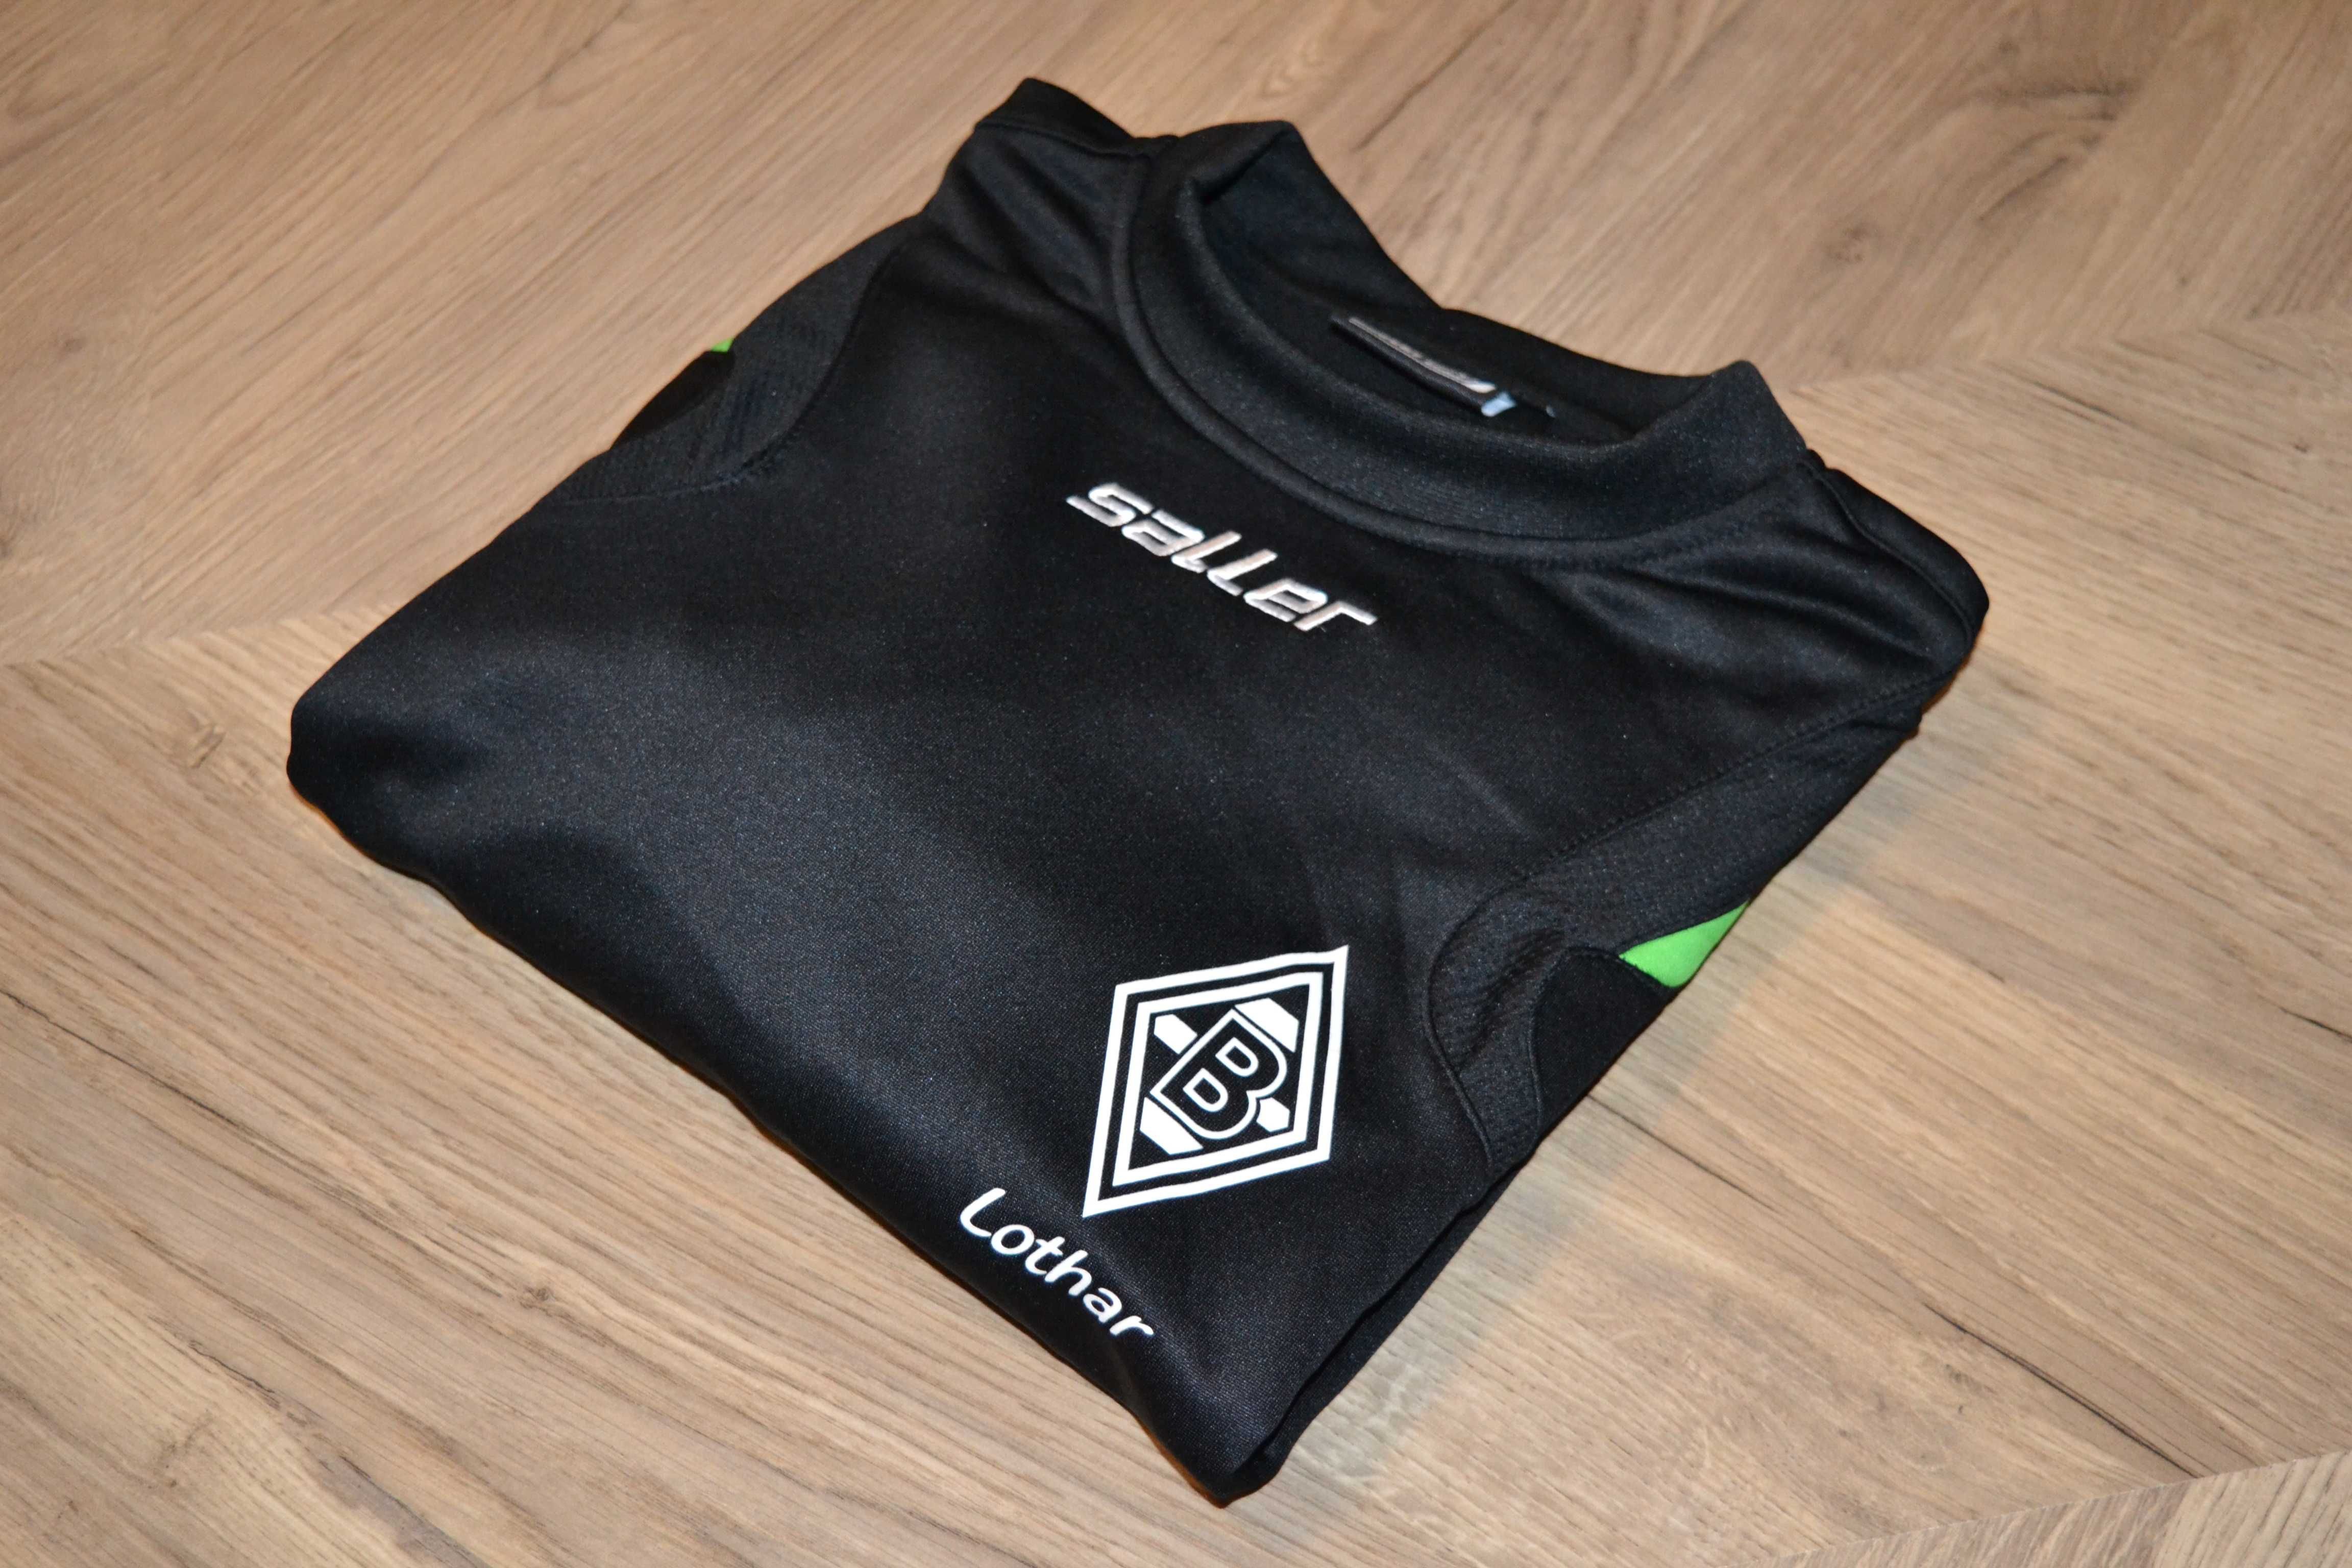 Saller _ czarna bluza fanklub _ Borussia Mönchengladbach _ XL